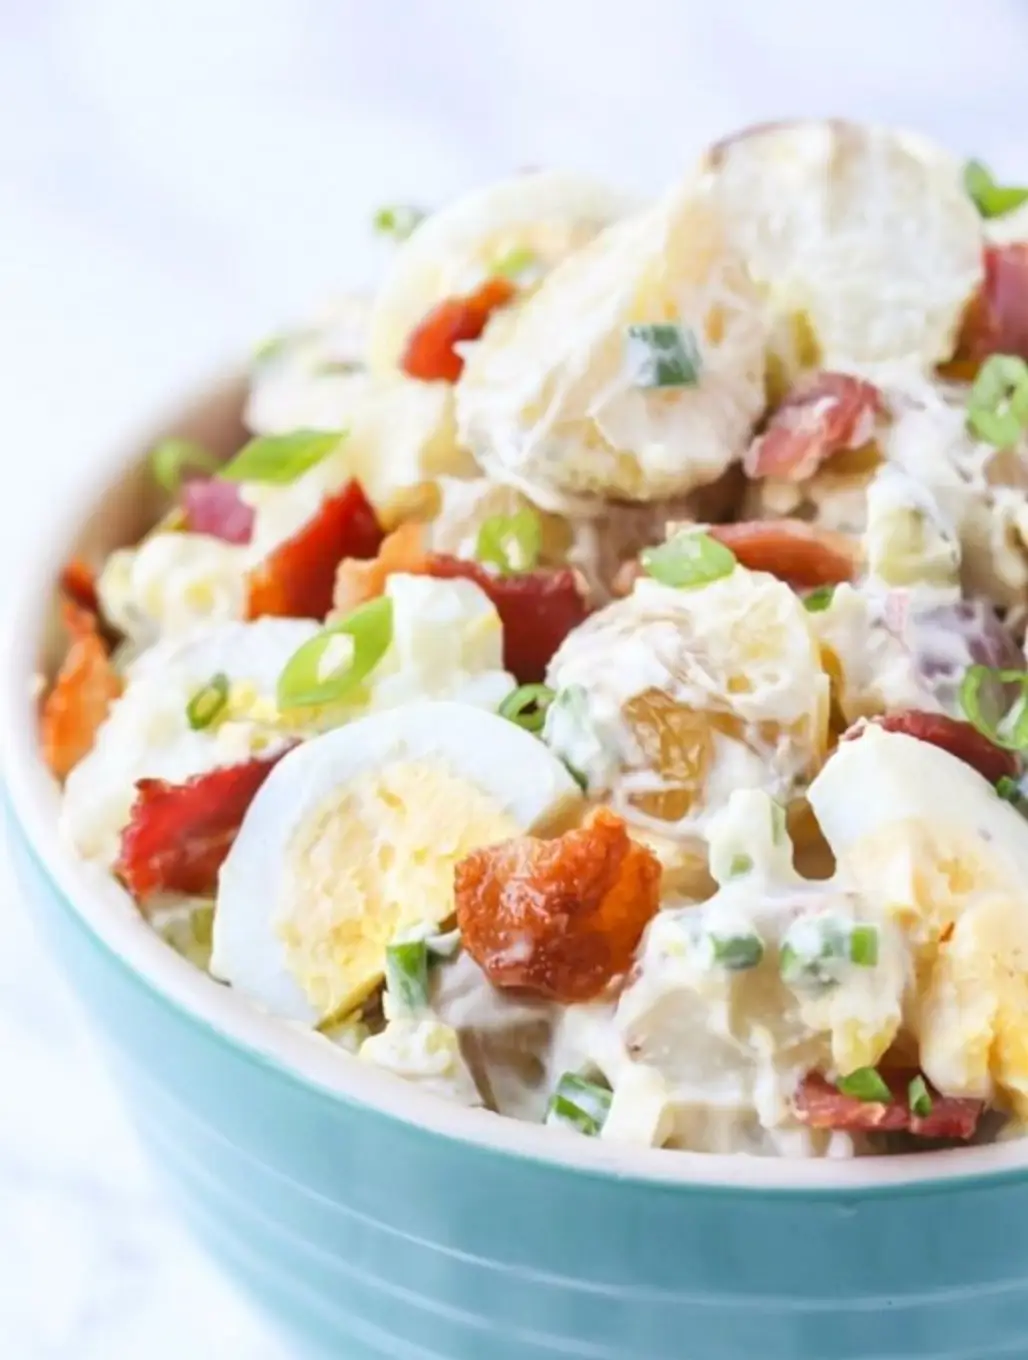 Potato Salad with Bacon and Egg